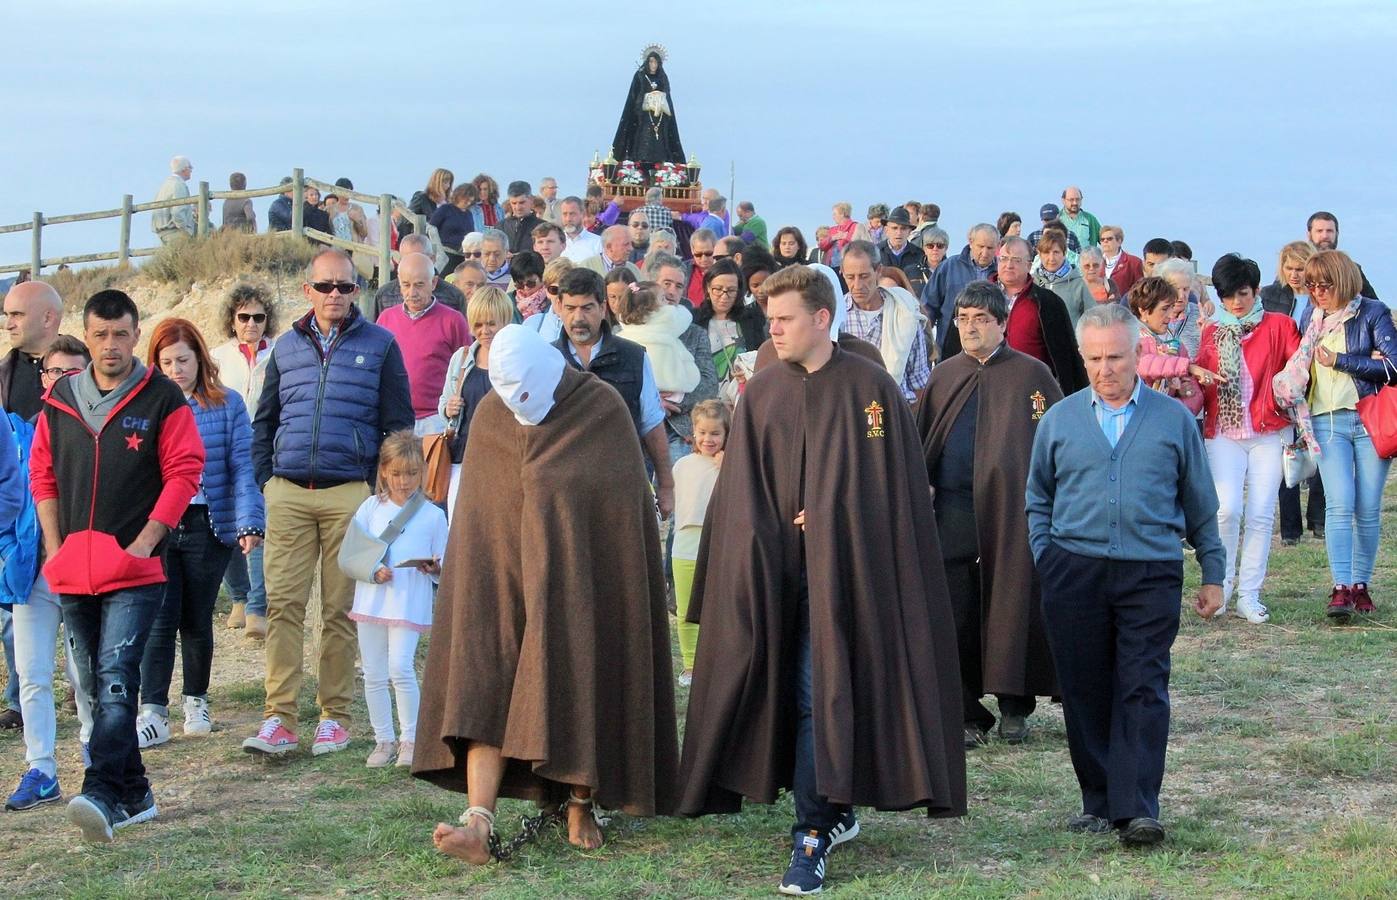 La procesión de la Cruz de septiembre volvió a reunir a los 'picaos'.